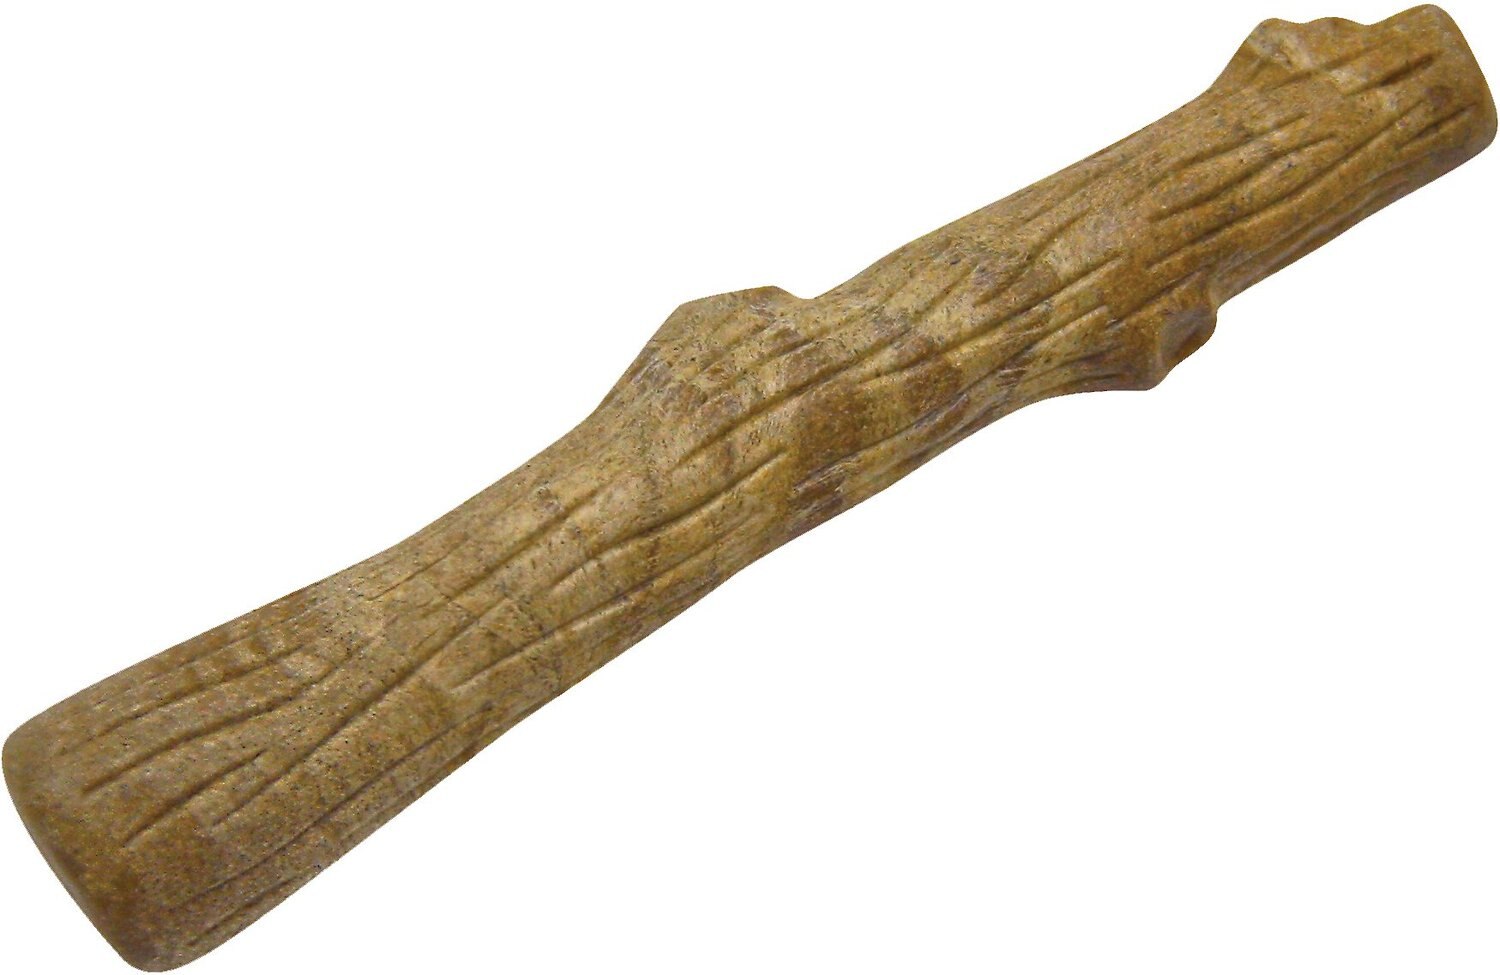 petstages dogwood stick large